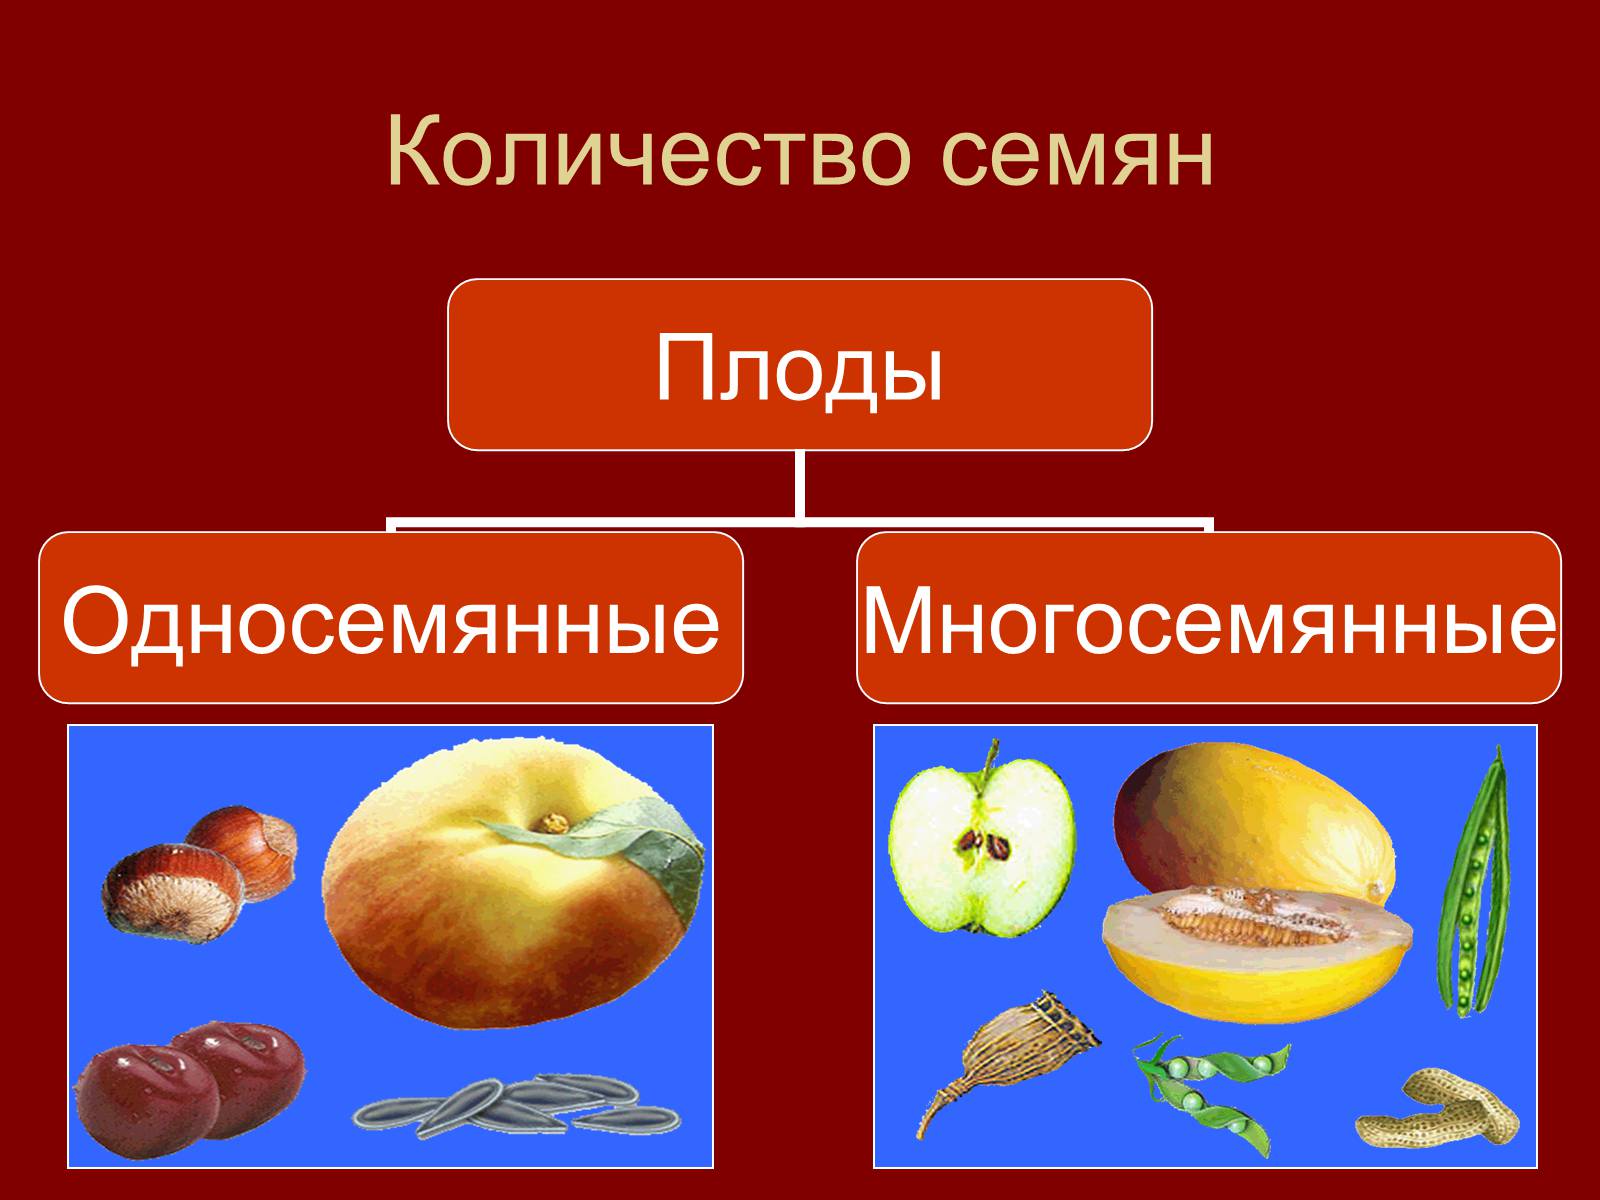 Сухой многосемянный плод это. Груша односемянный или многосемянный плод. Сухие односемянные плоды. Апельсин многосемянный или односемянный. Груша многосемянная или односемянная.